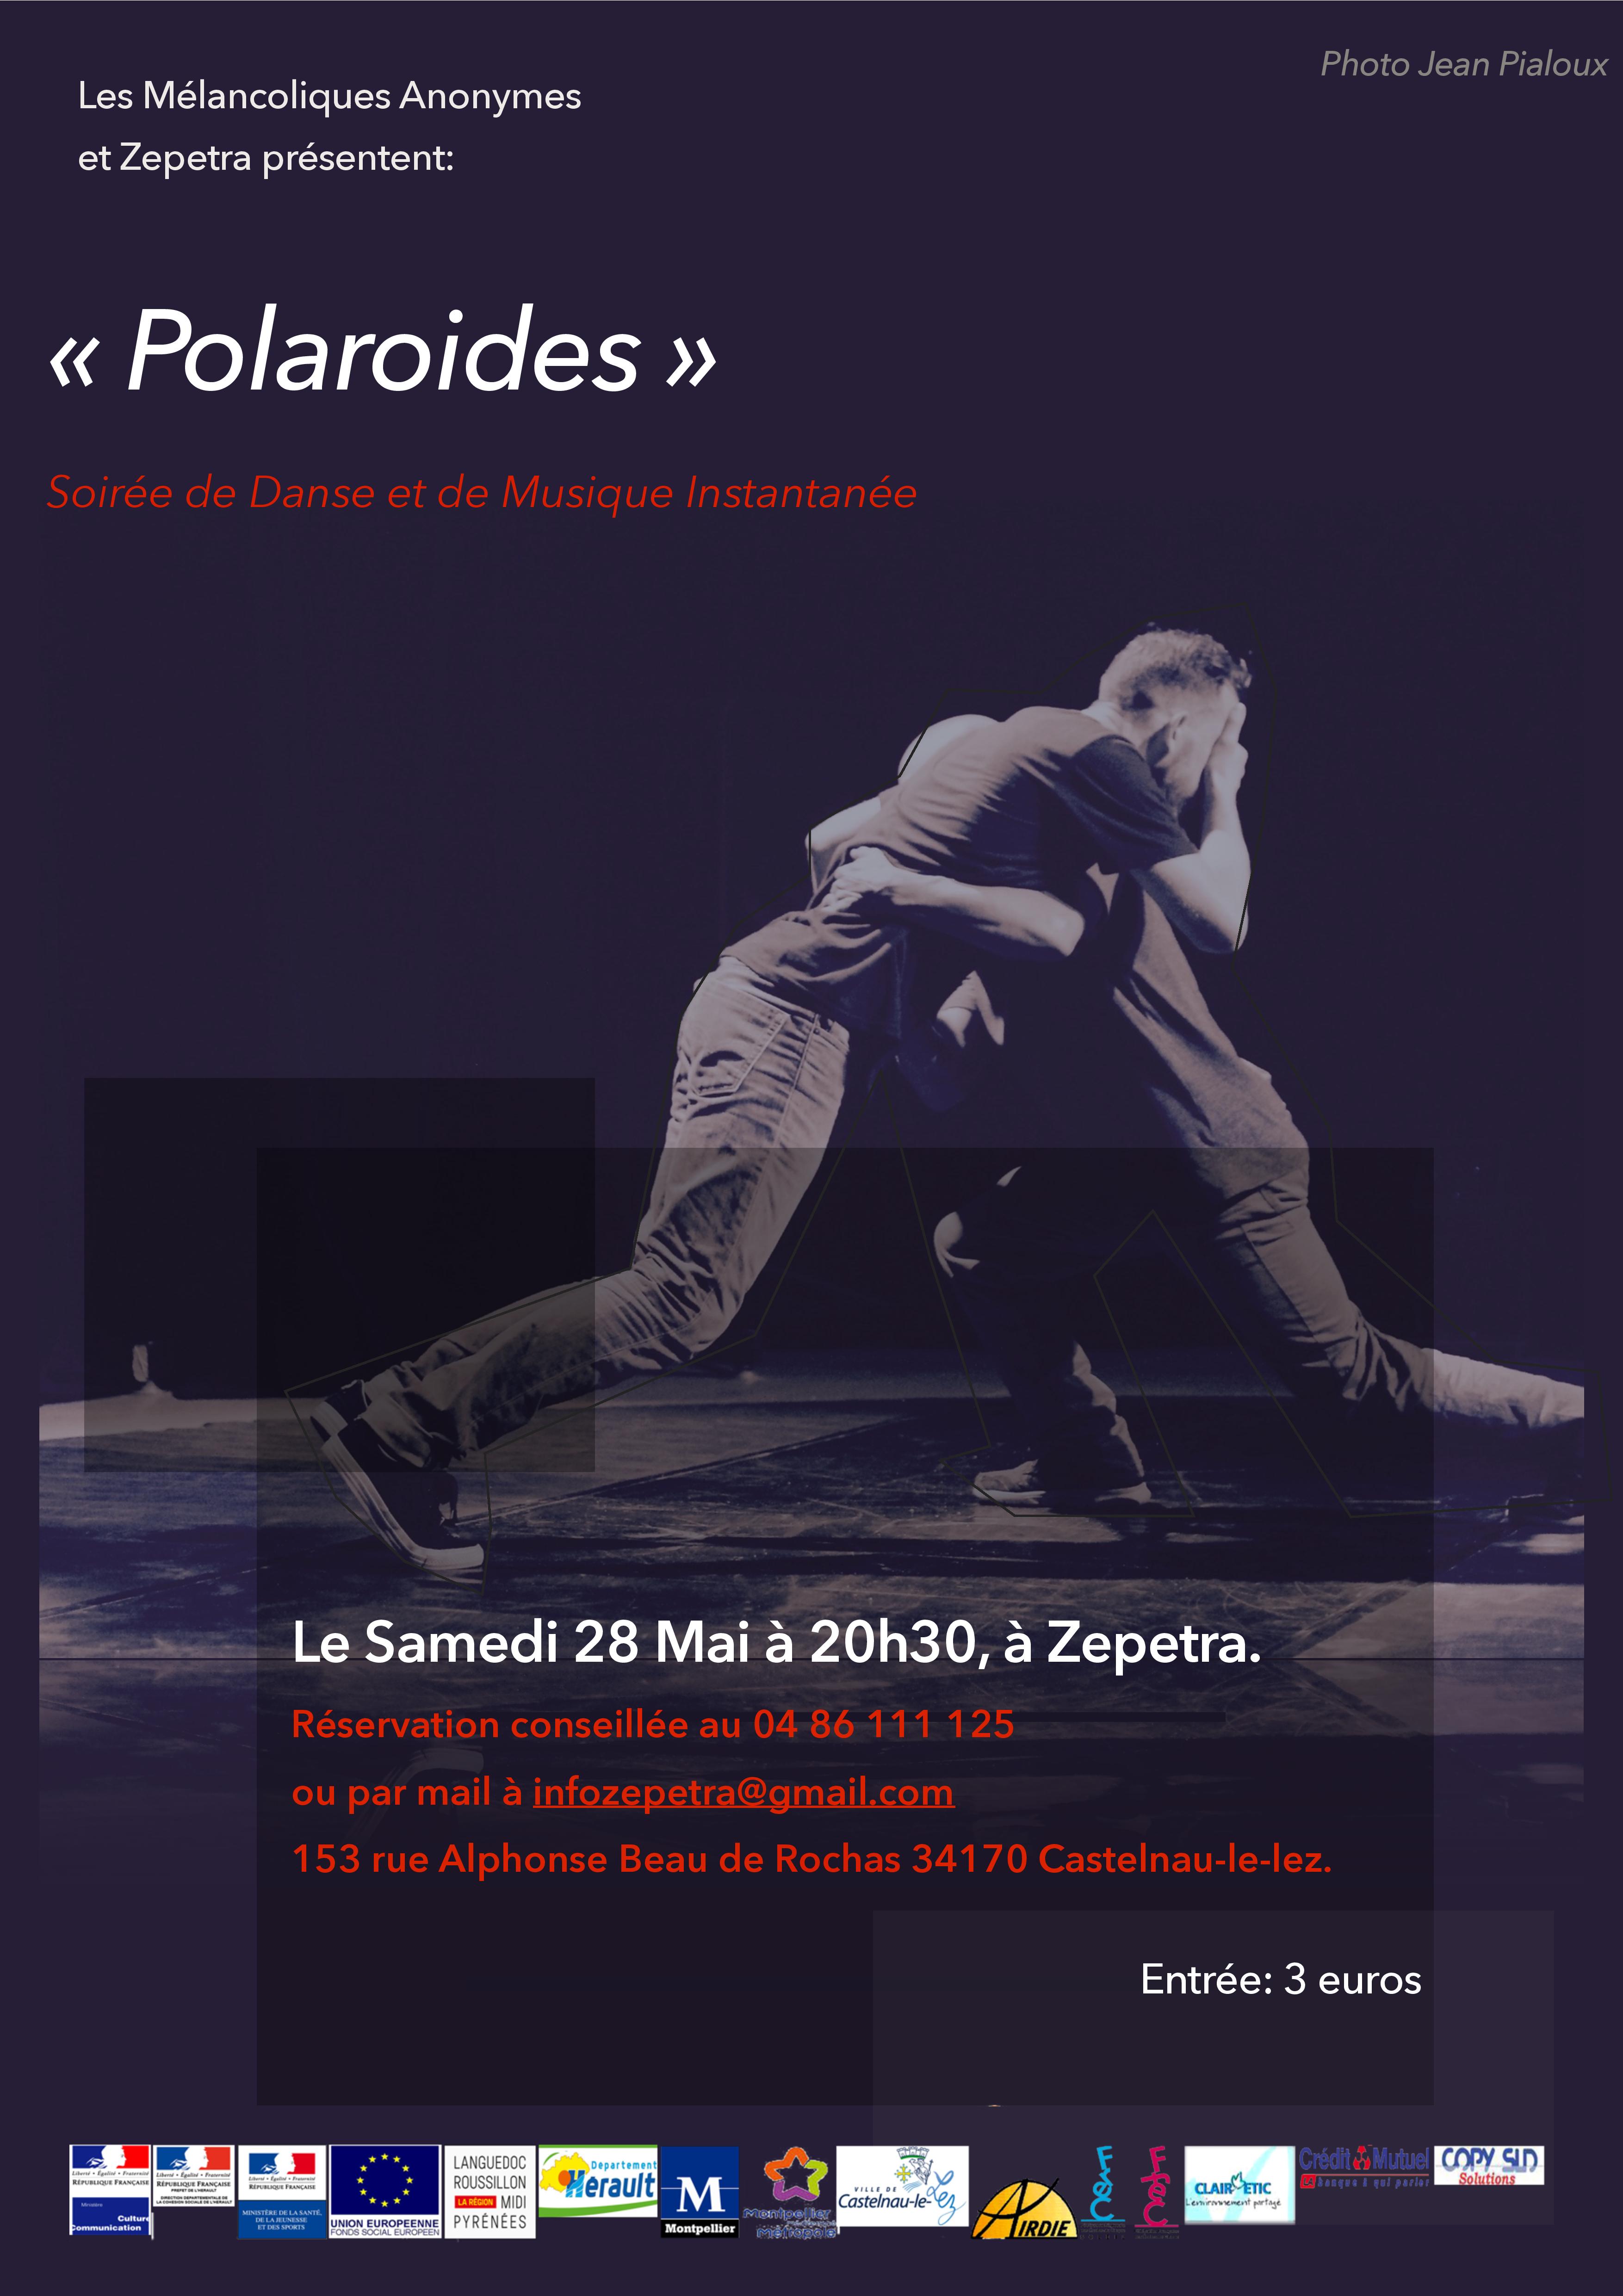 Polaroïdes: Soirée de danse et de musique instantanée par les Mélancoliques Anonymes à Zépetra